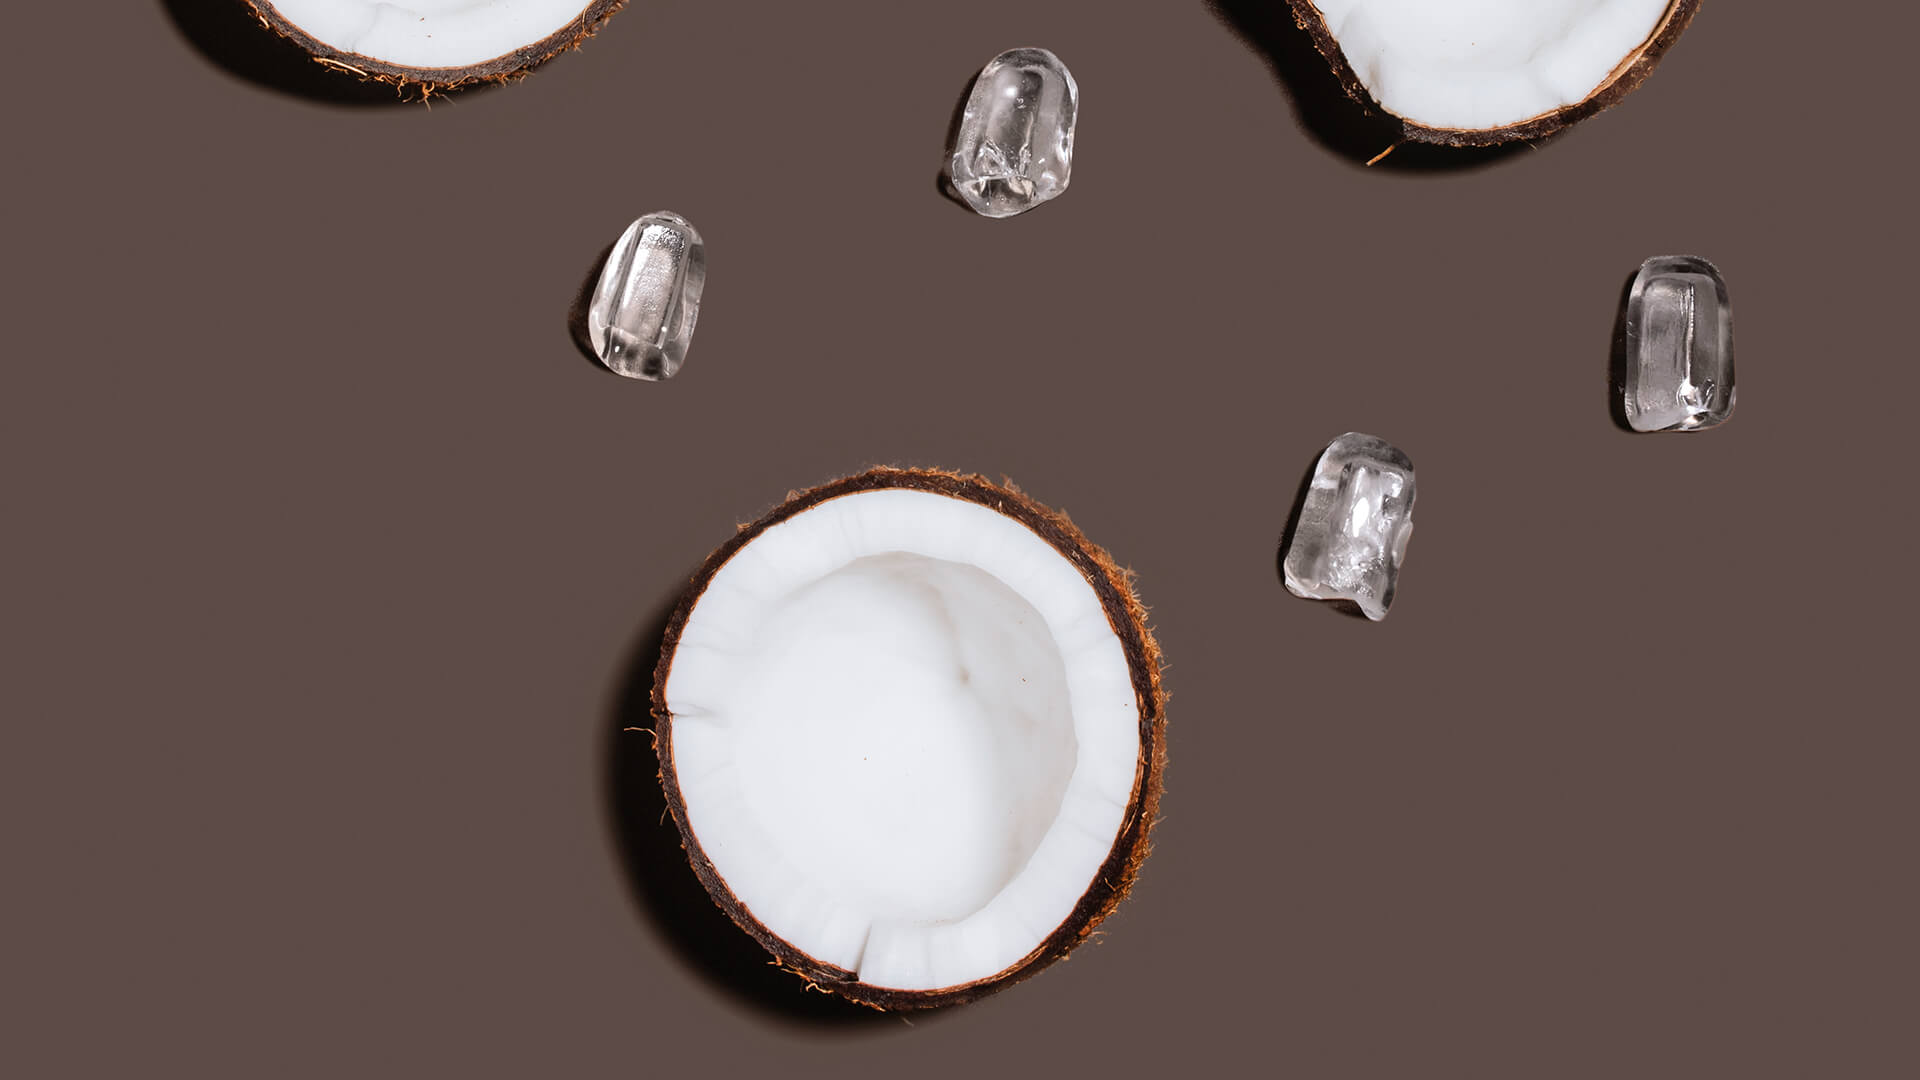 Icematic Coco - Maquinas de hielo en cubitos para hosteleria
